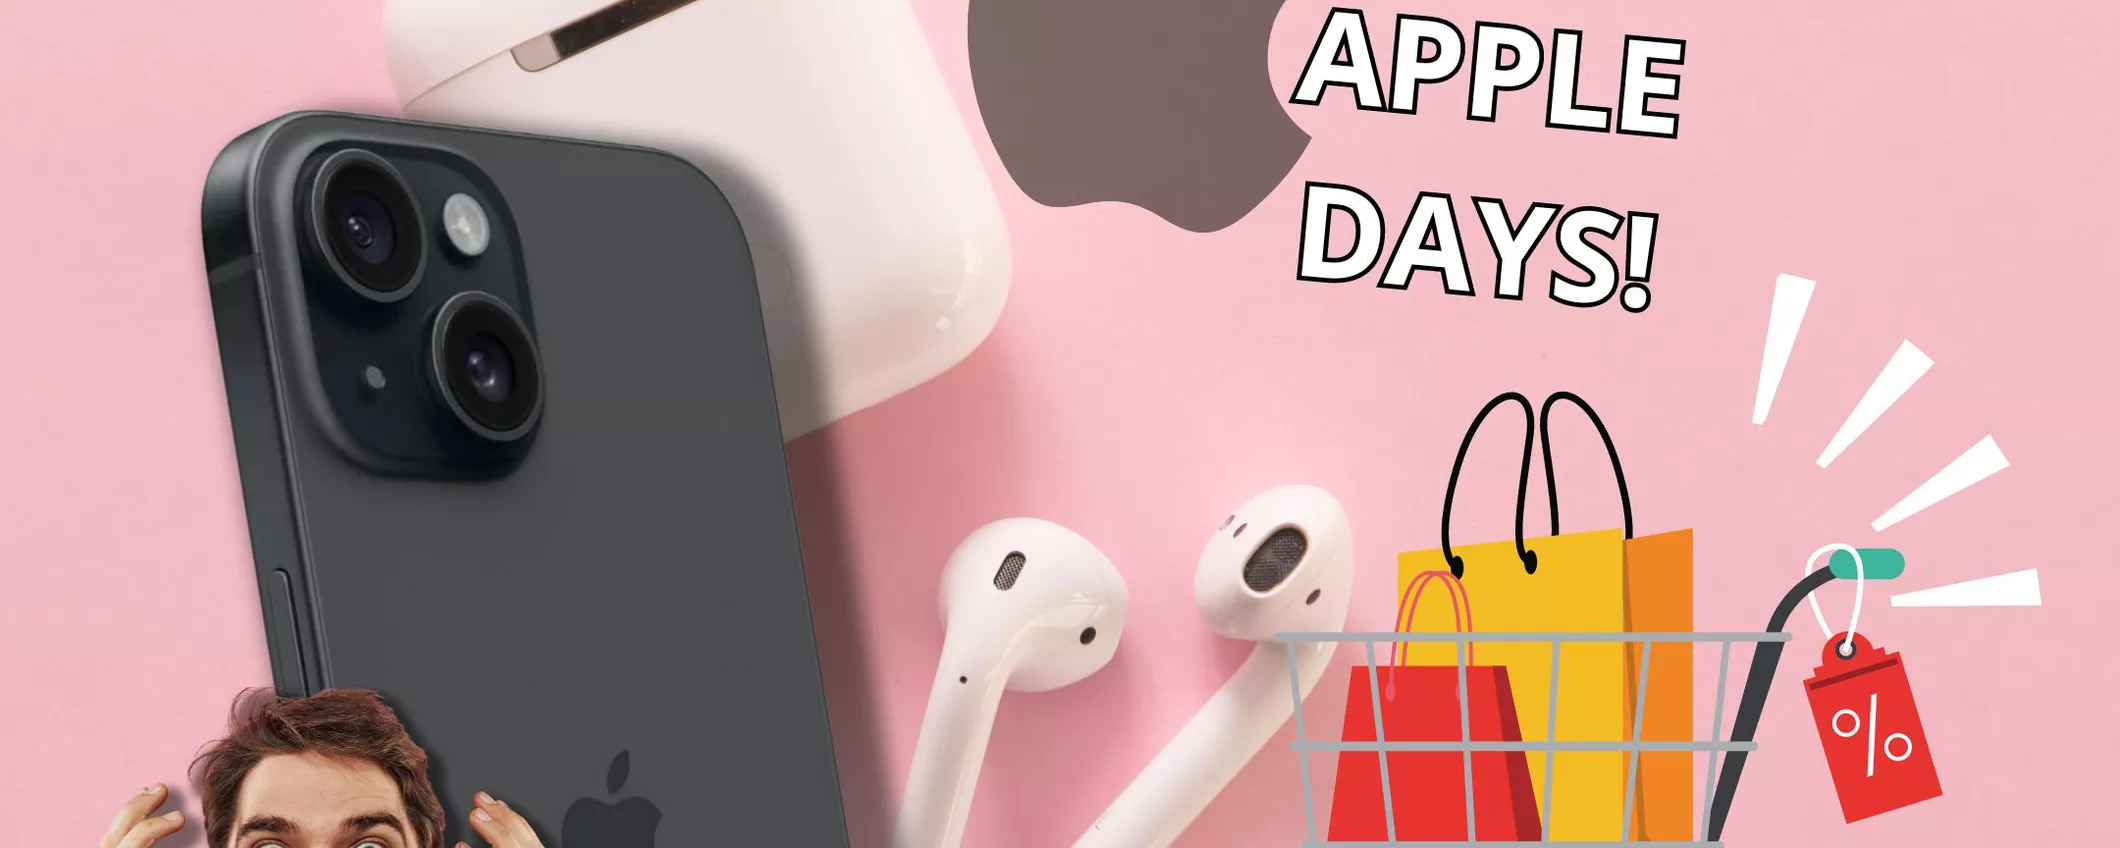 , Apple Days: la lista DEFINITIVA degli sconti Apple più grandi!